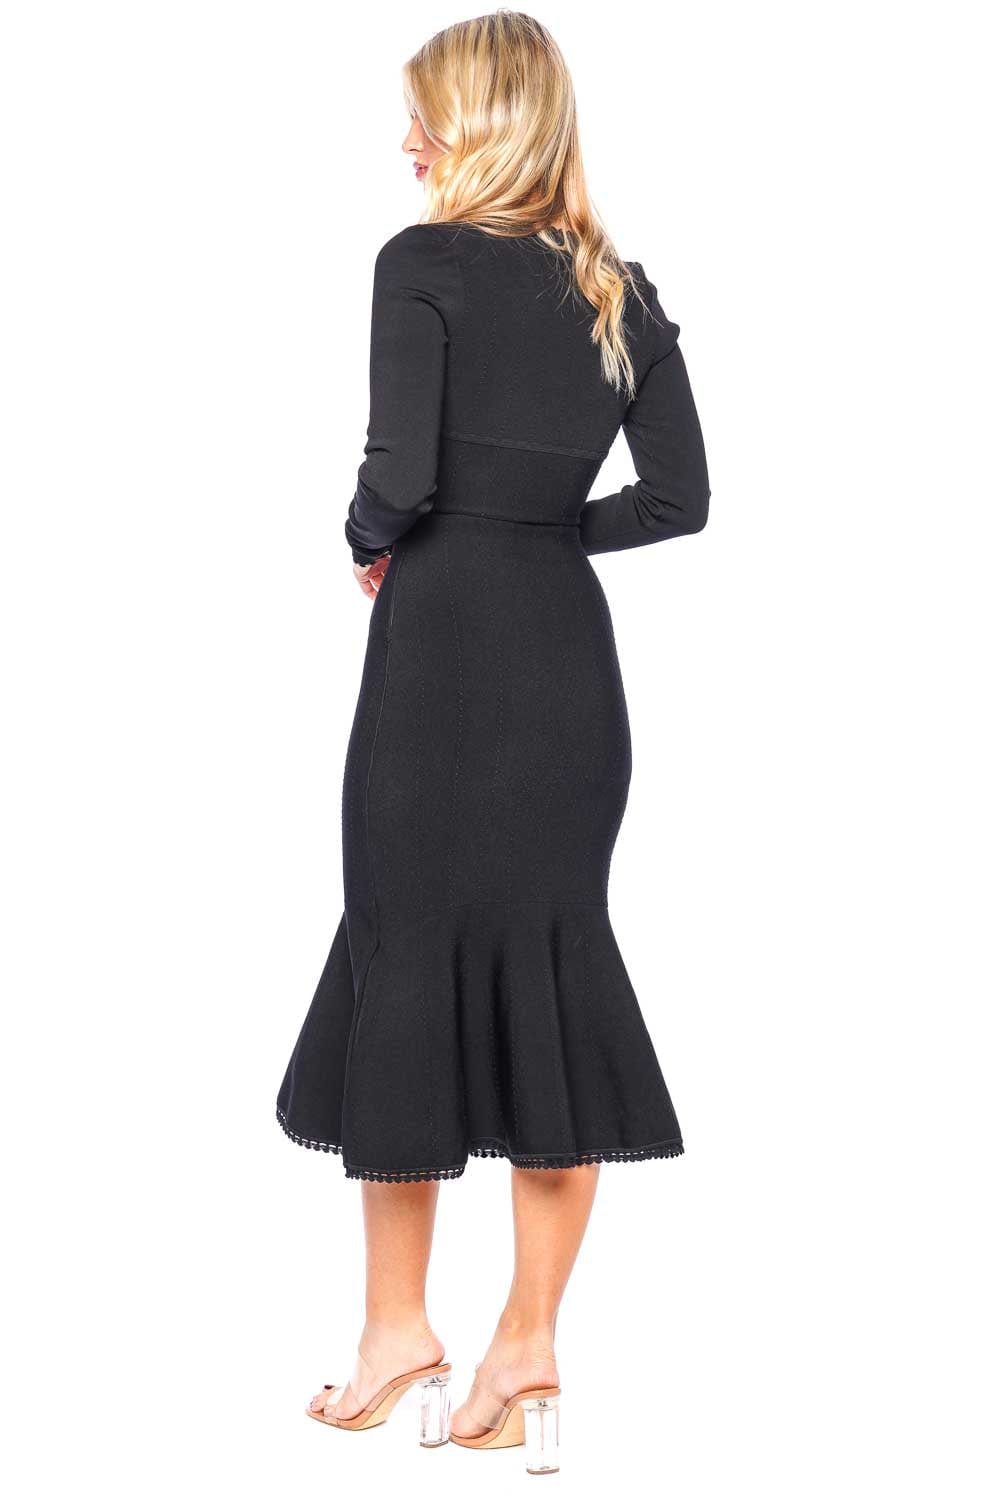 Victoria Beckham Long Sleeve V Neck Dress 1423KDR004902A BLACK